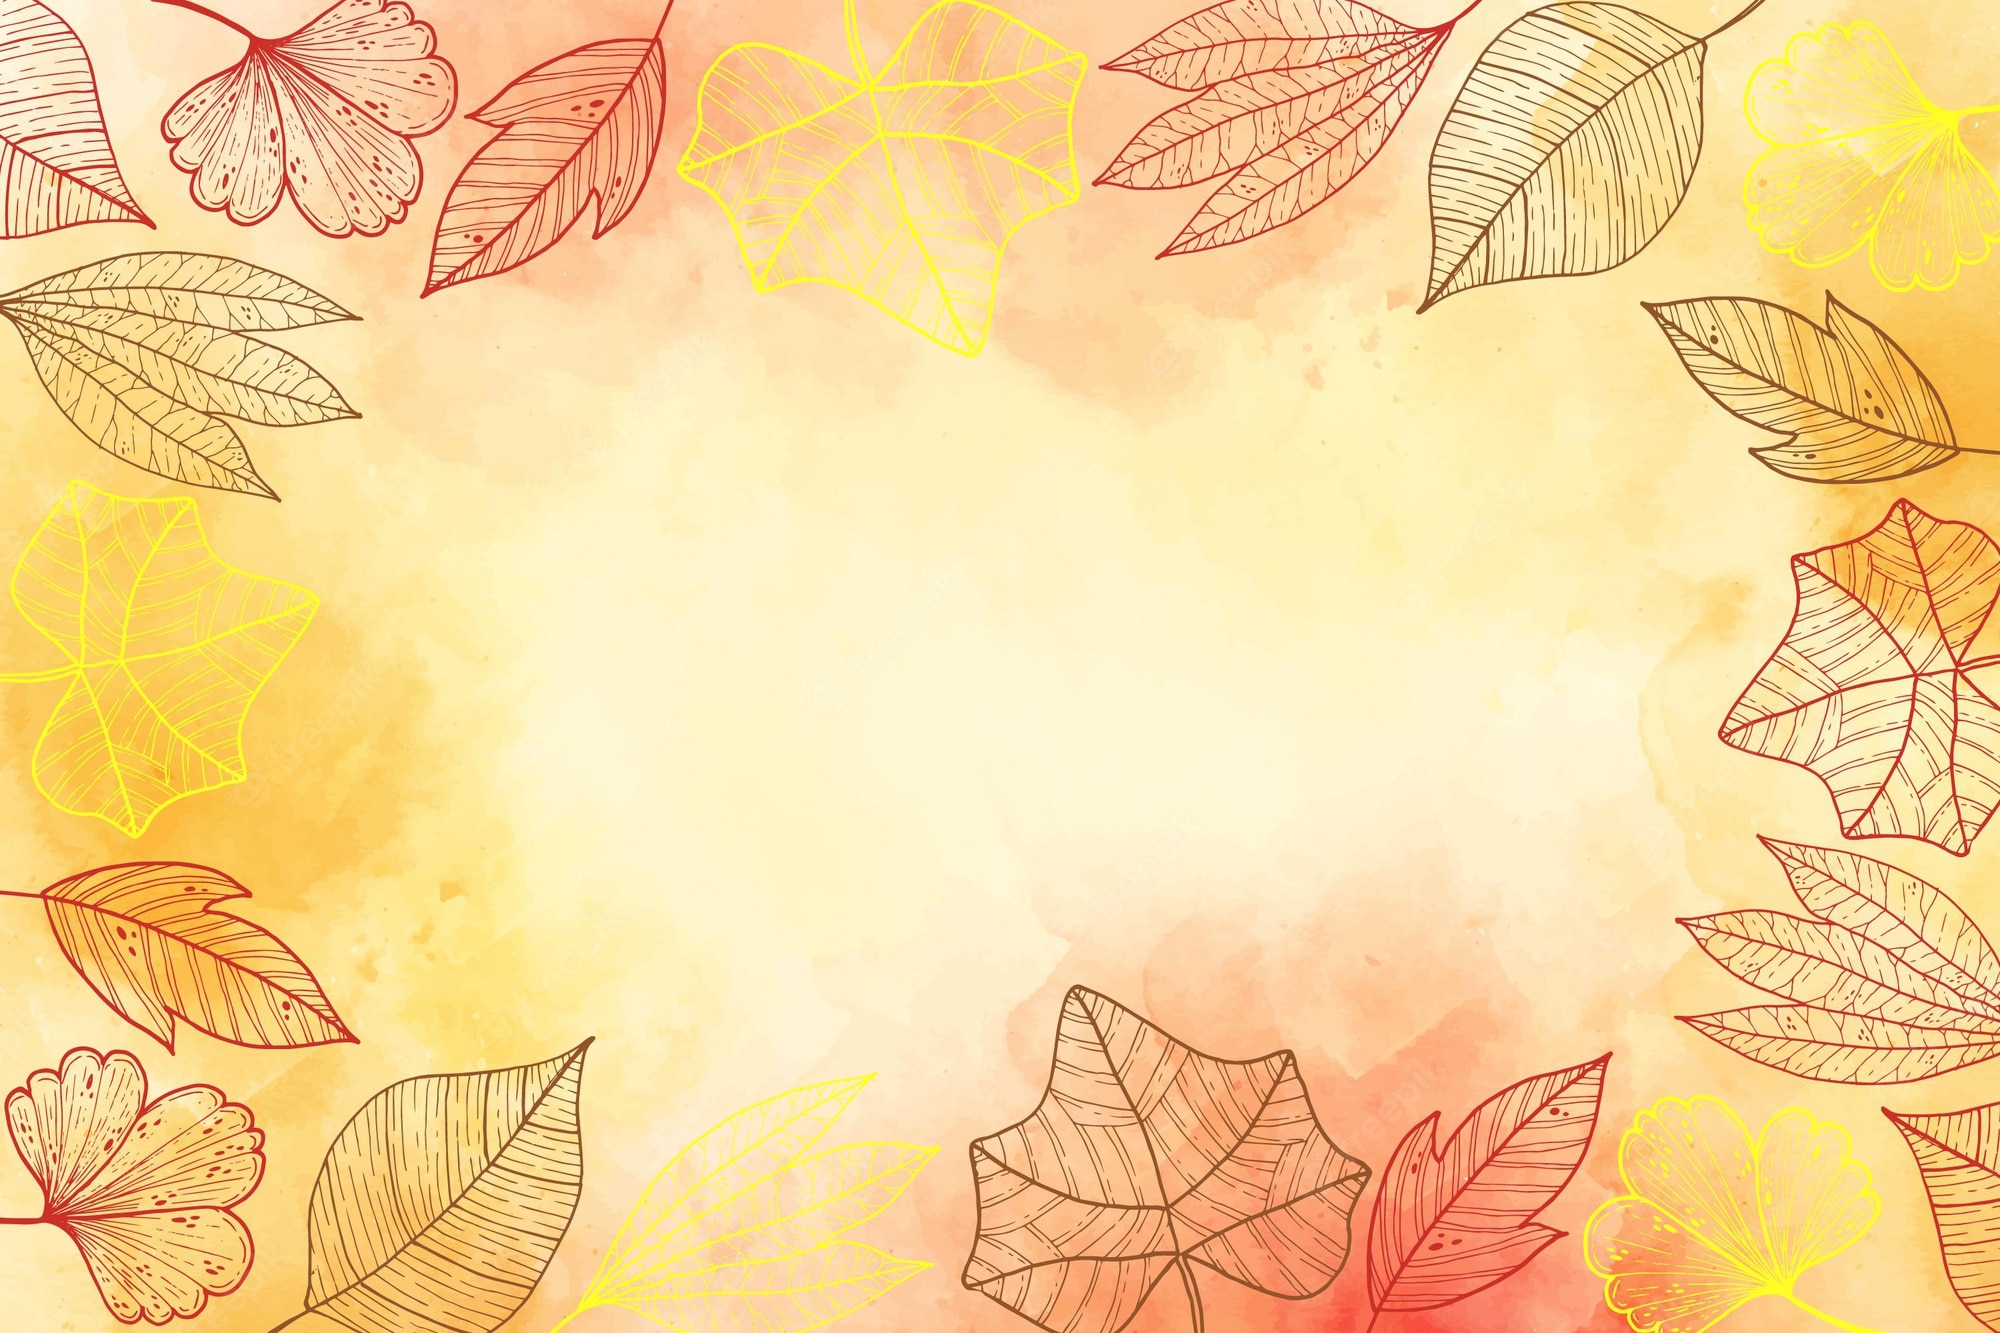 Autumn wallpaper Image. Free Vectors, & PSD